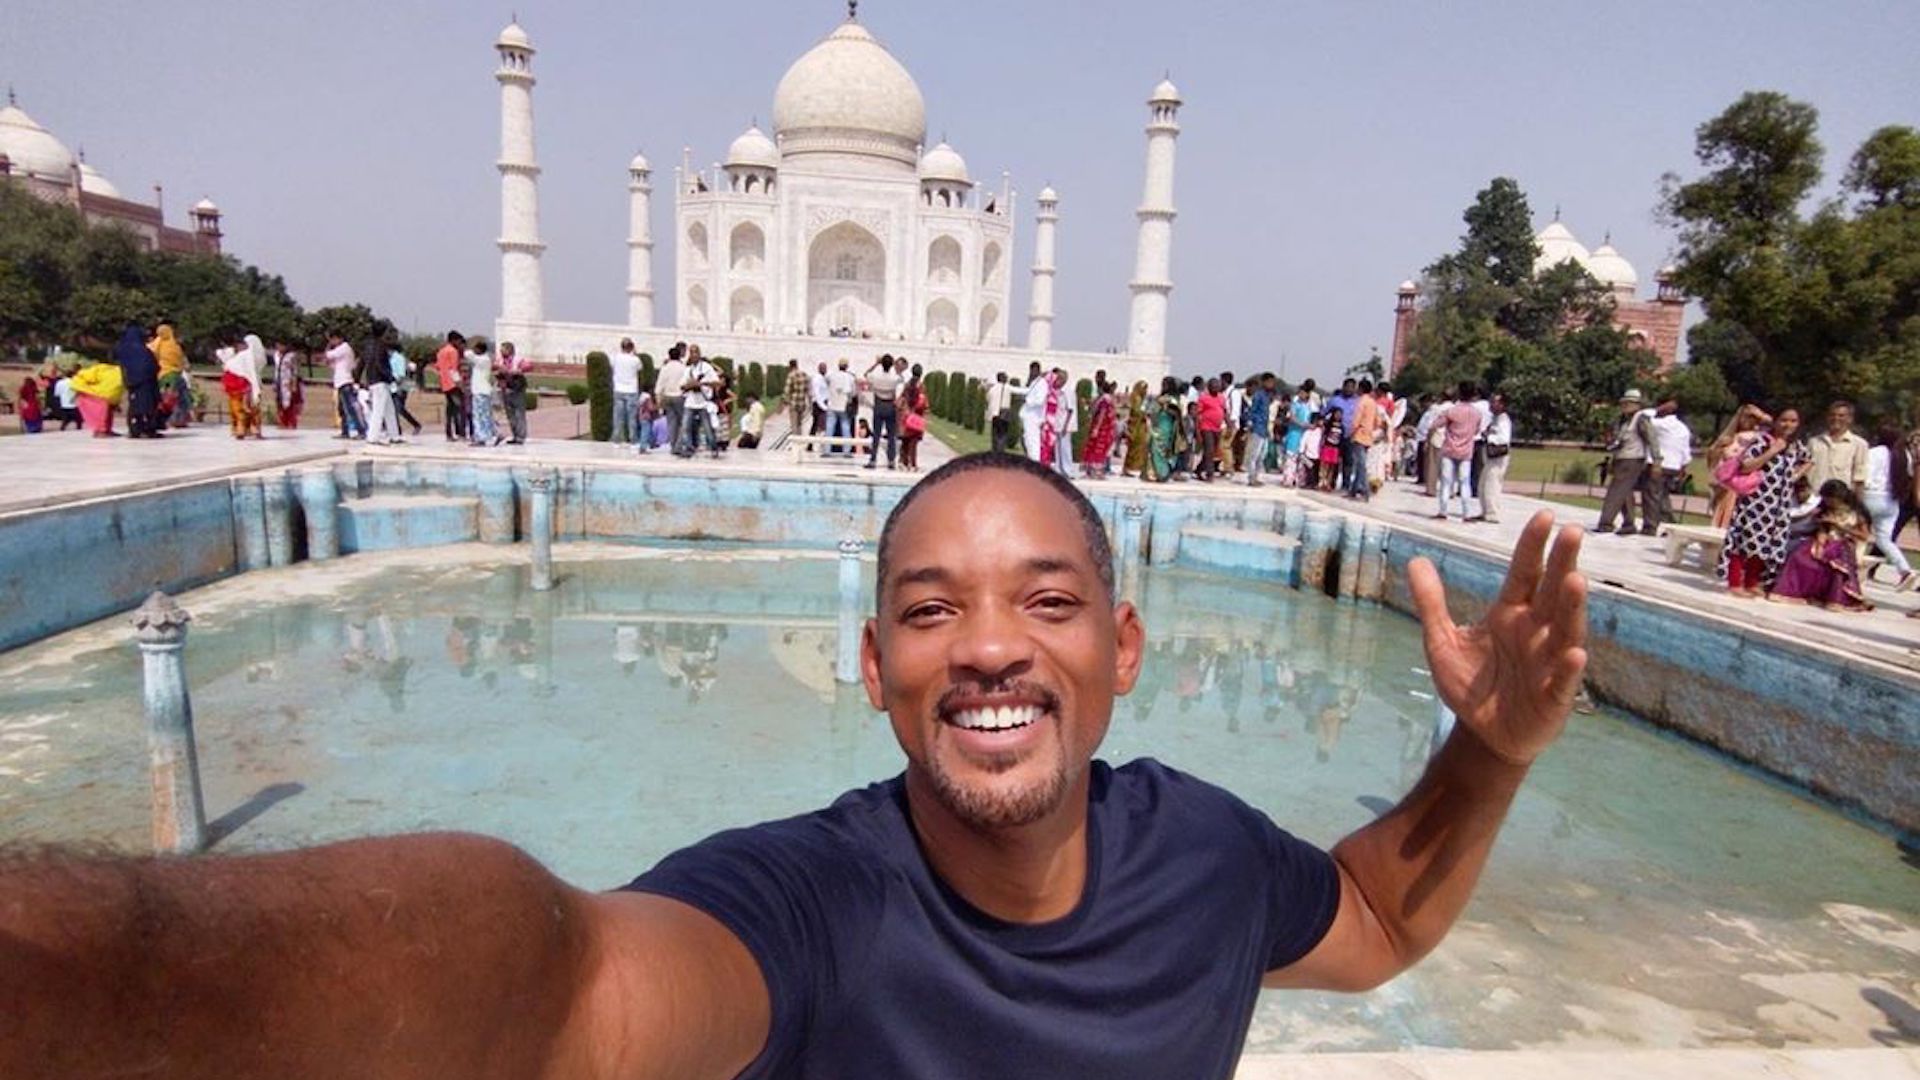 Will Smith at the Taj Mahal